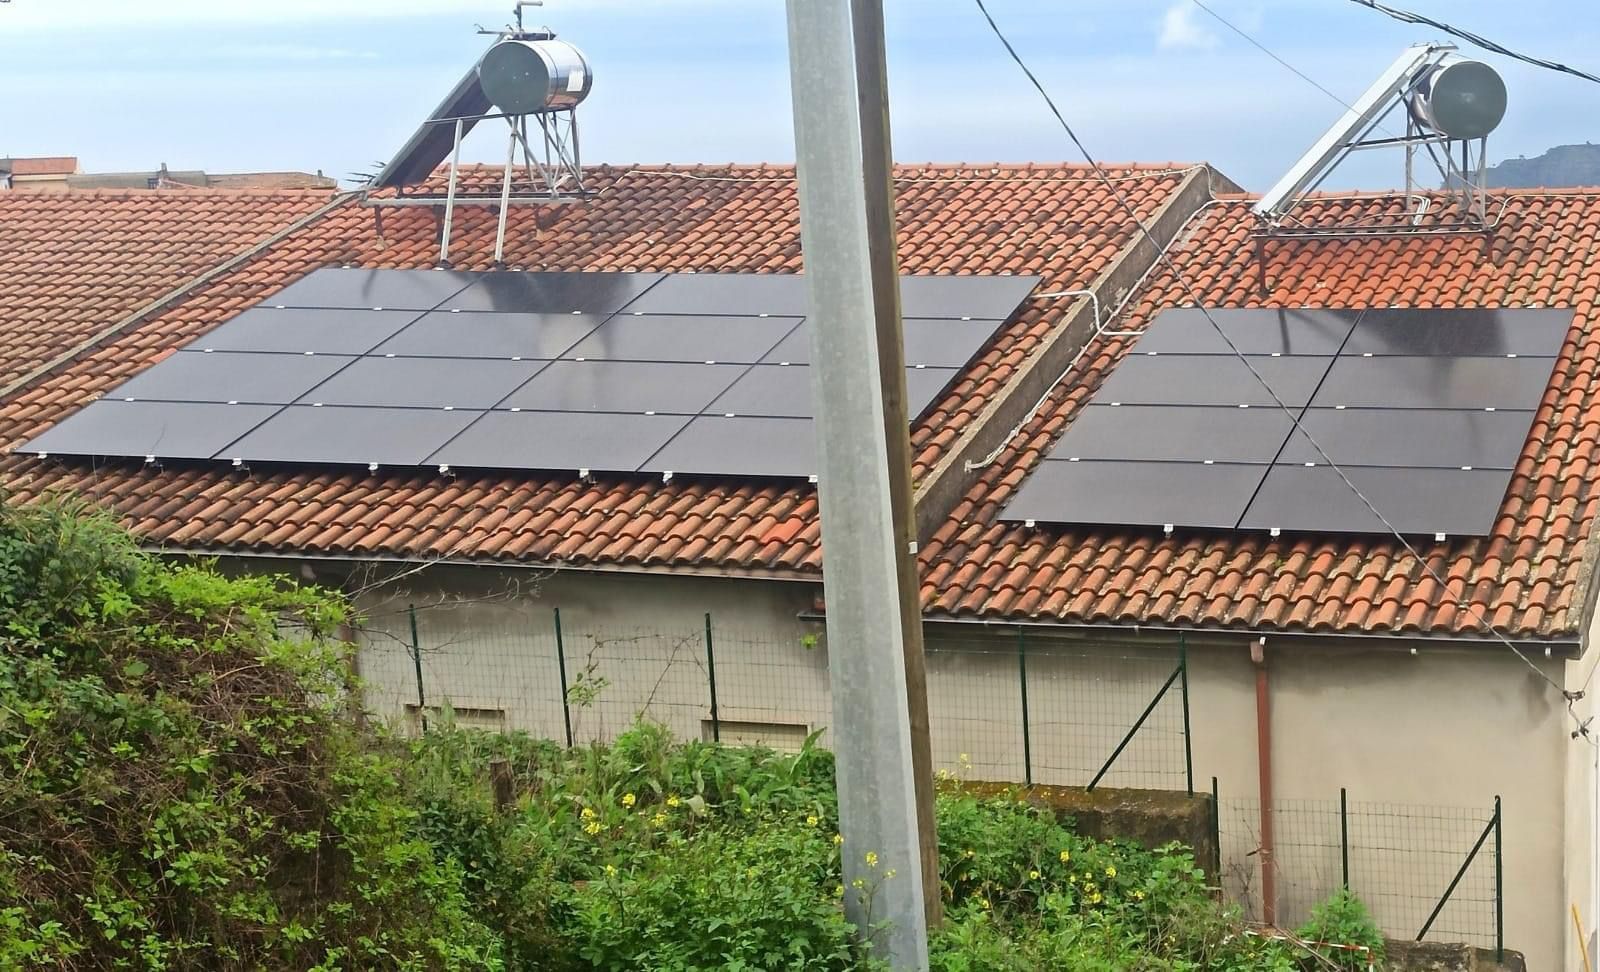 Pannelli fotovoltaici e termici alla scuola primaria di San Mauro Cilento